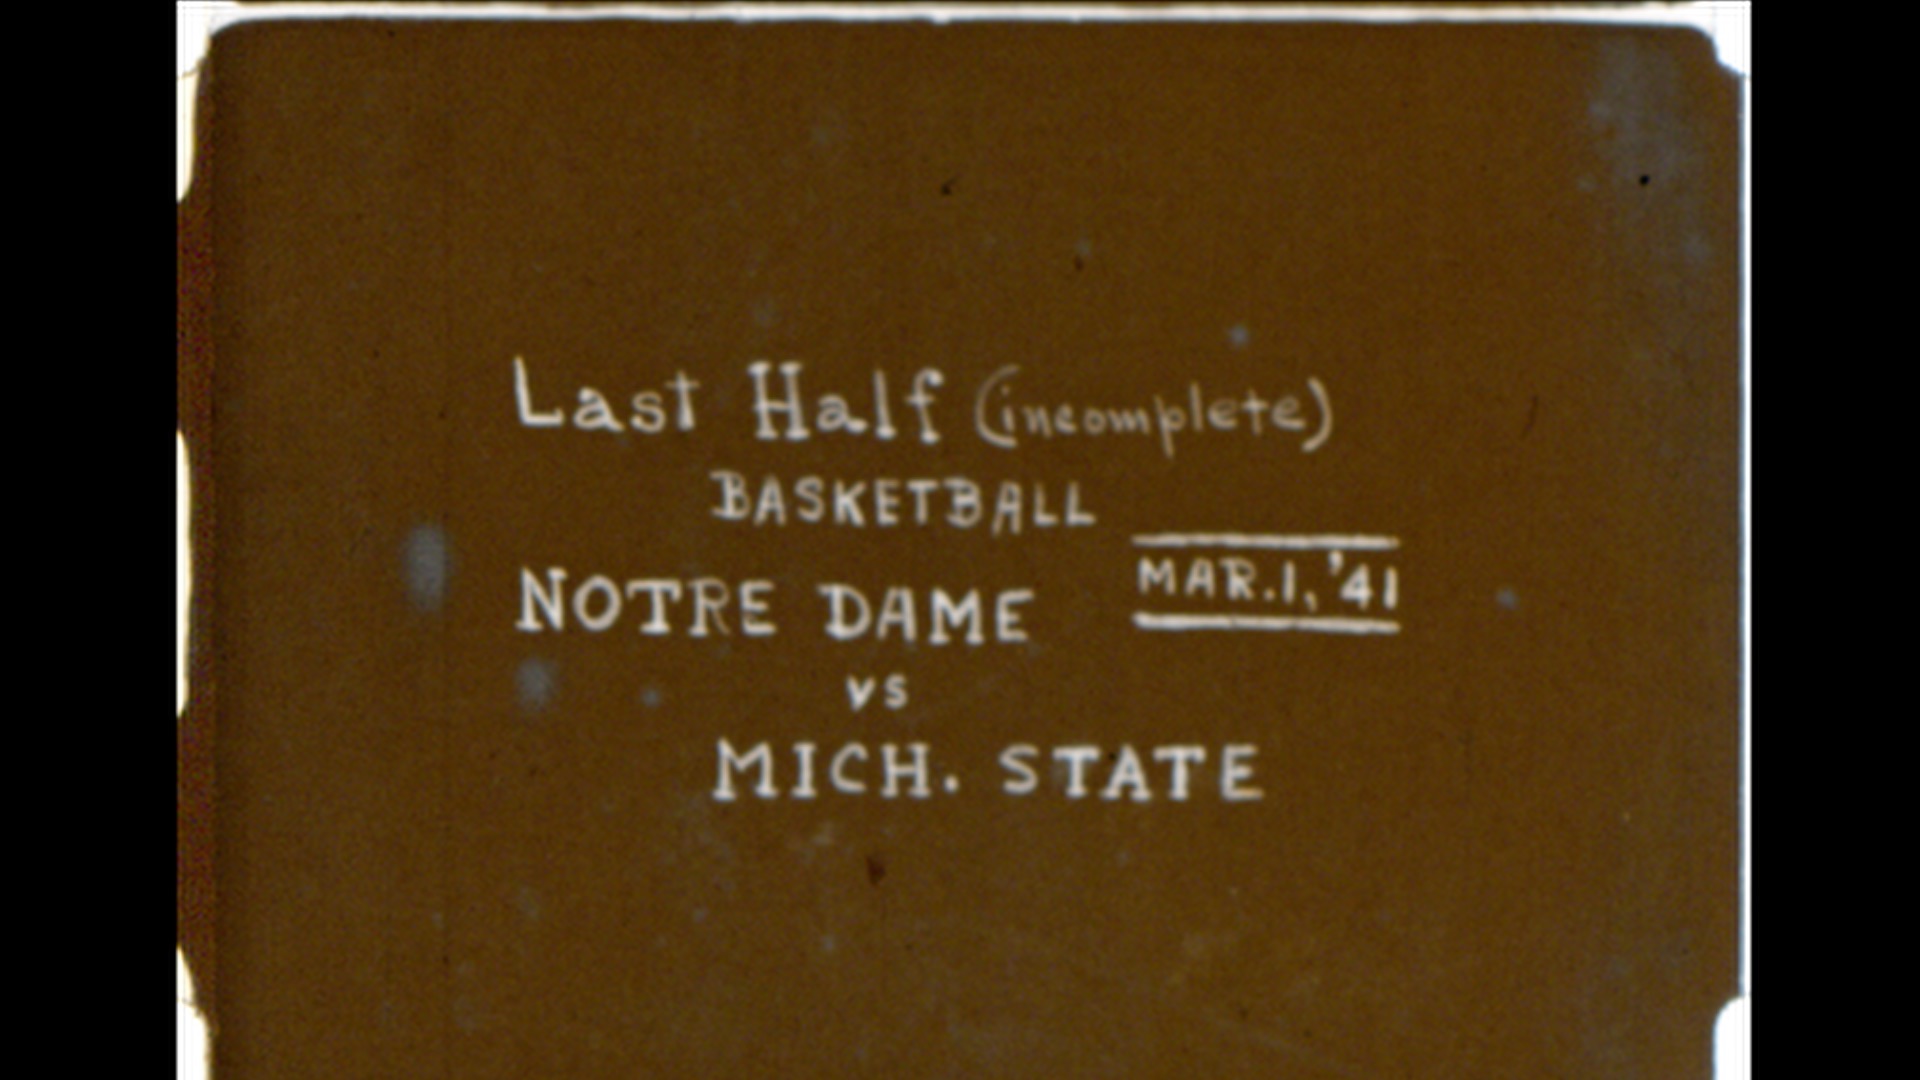 MSC Basketball vs. Notre Dame, 1941 (2nd half, incomplete)